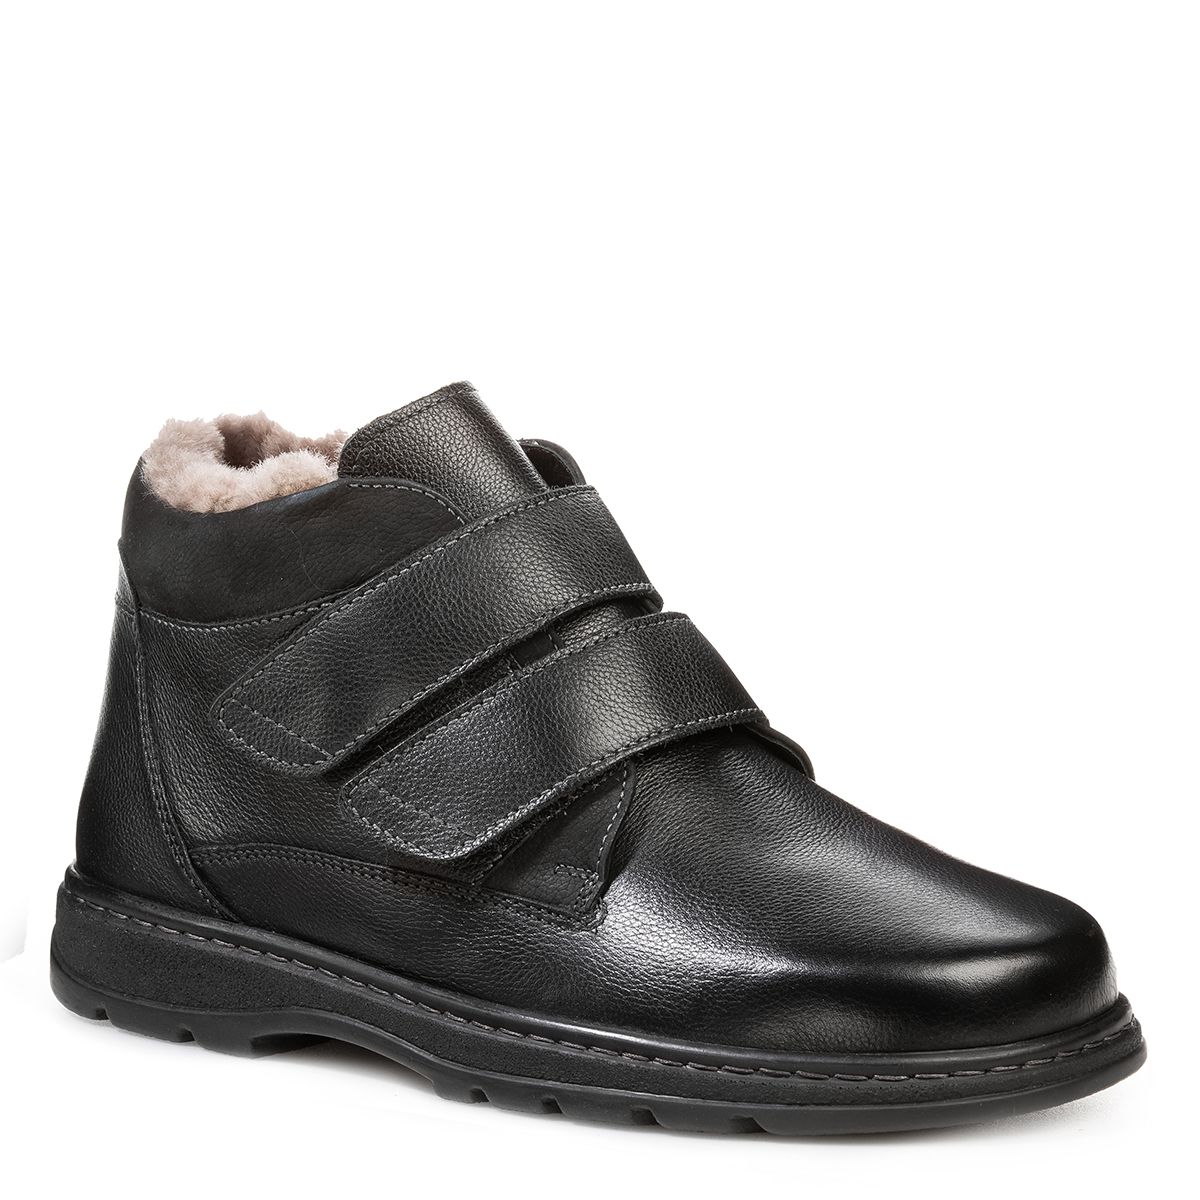 Мужские зимние ботинки Solidus Natura Man Stiefel черные женские зимние ботинки kalea stiefel solidus черные